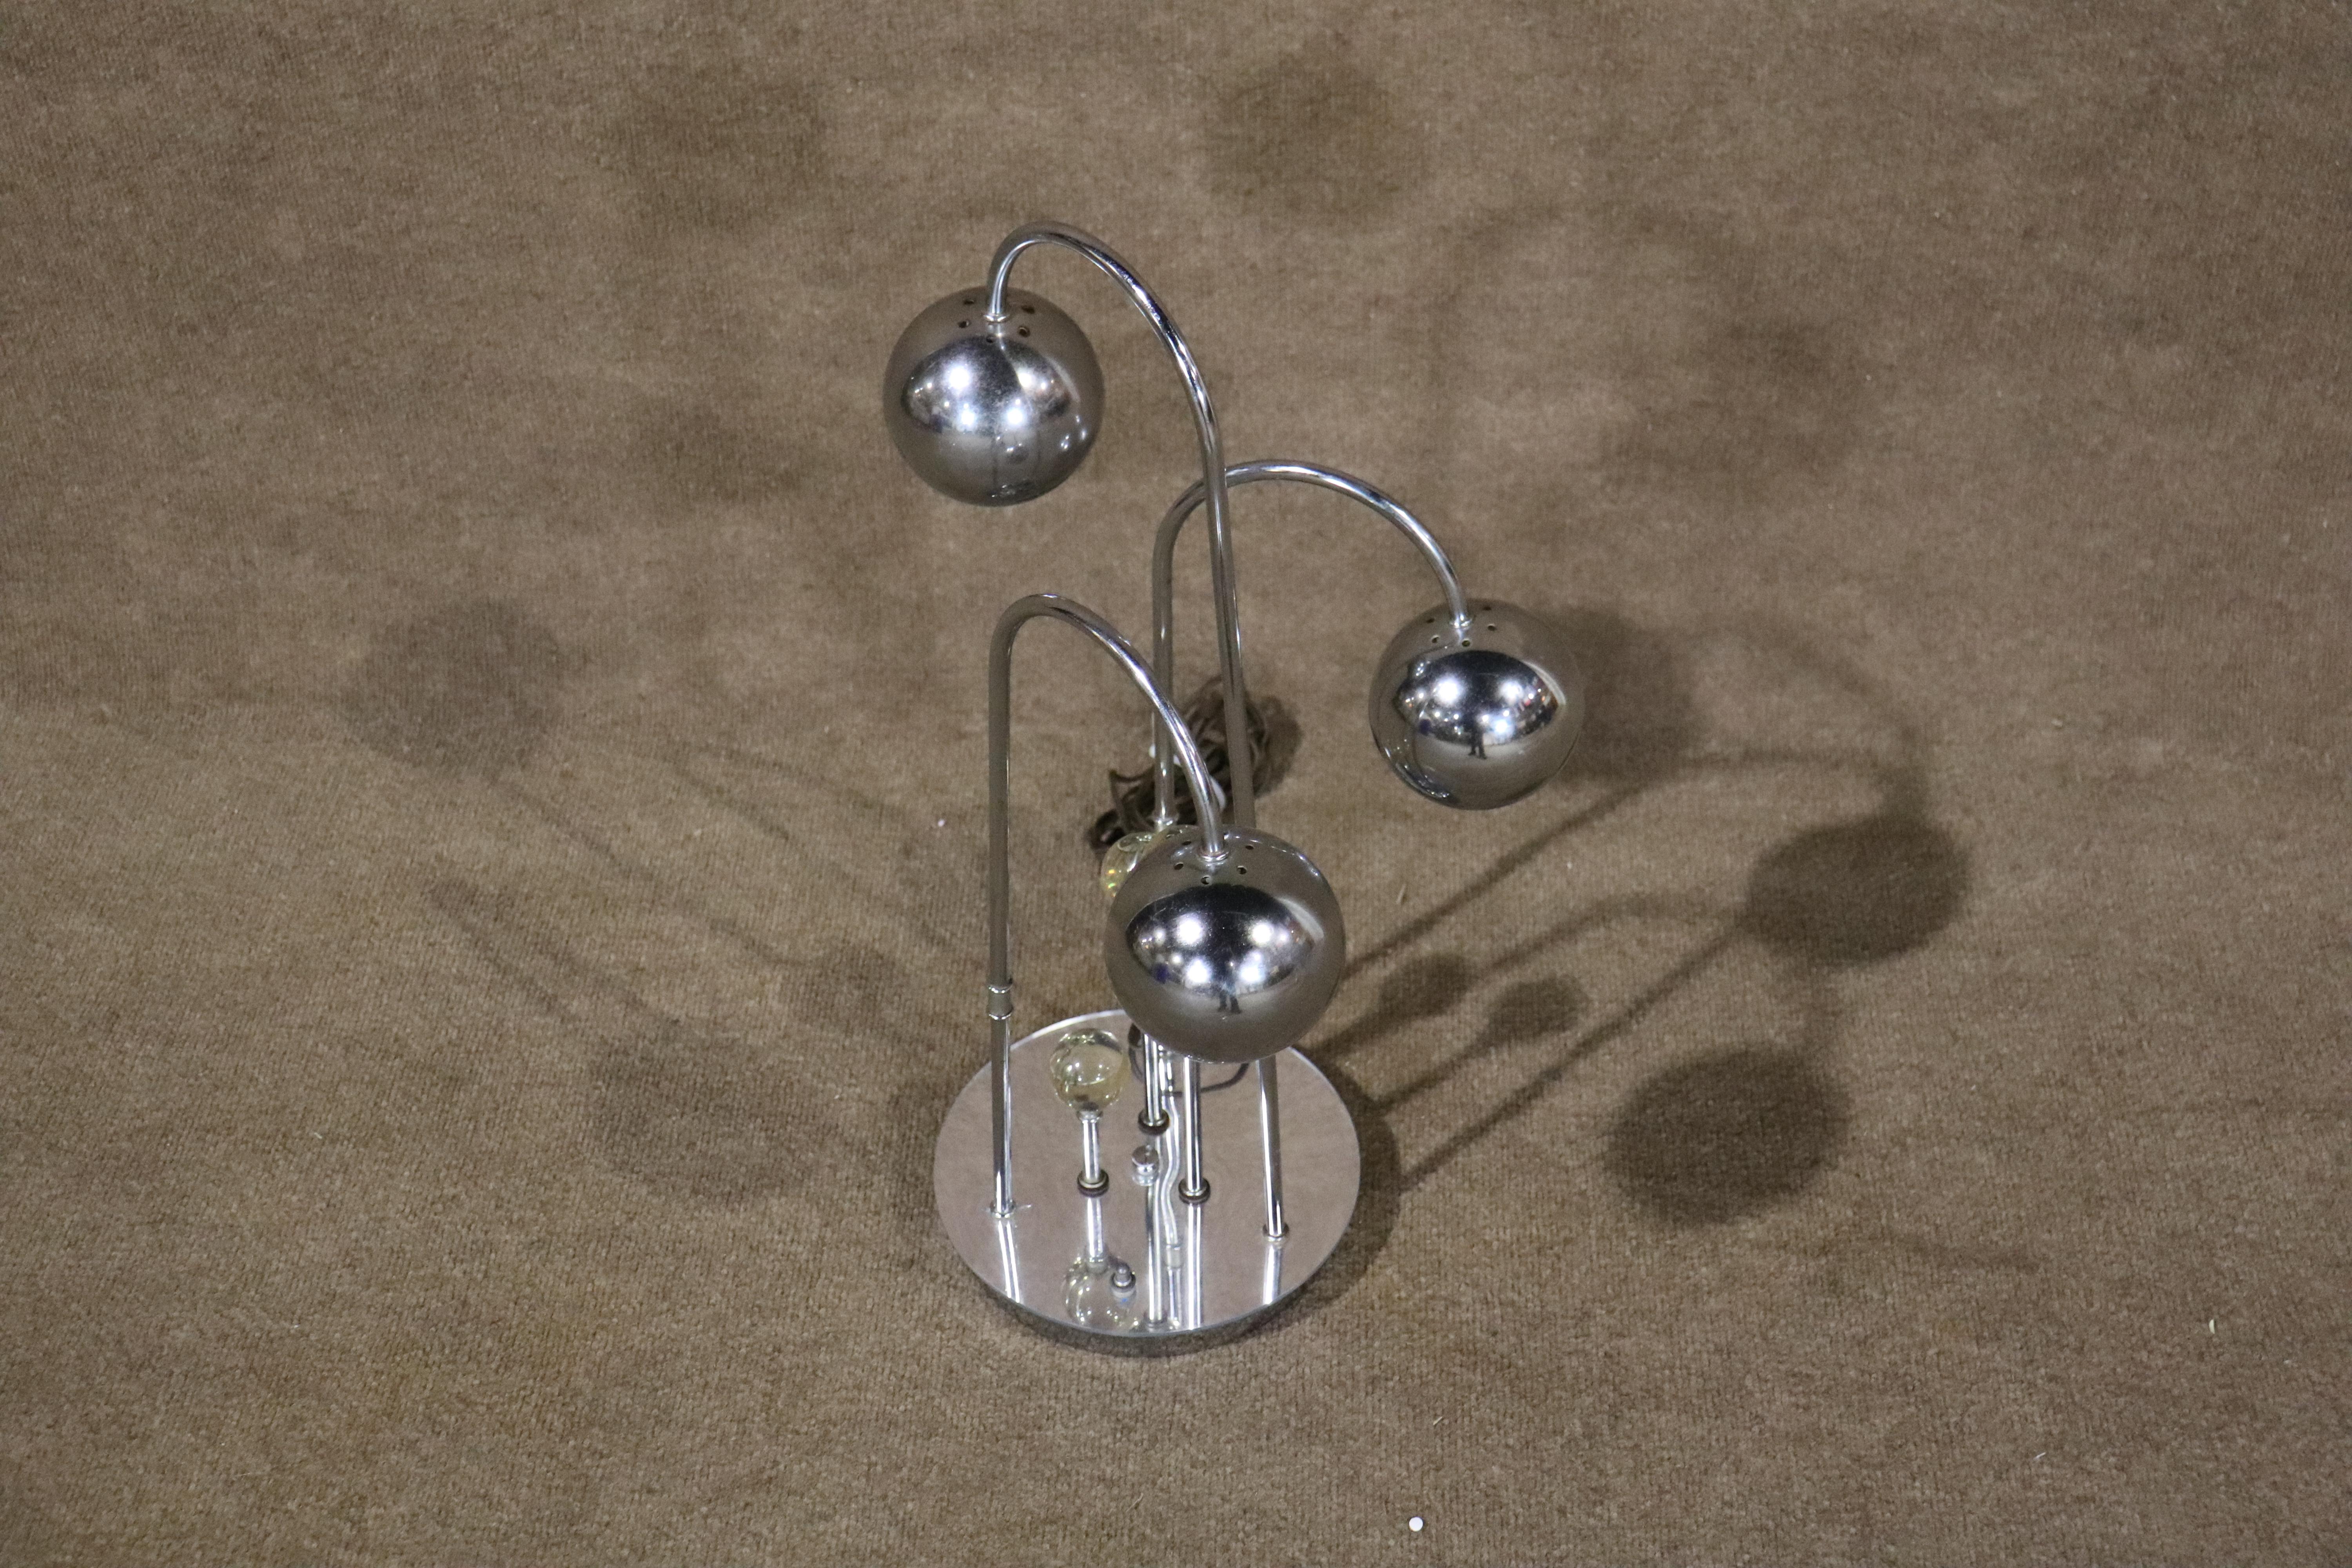 Lampe de table en chrome poli avec bras mobiles. Chaque lampe est dotée d'un abat-jour rond et d'une douille simple.
Veuillez confirmer le lieu NY ou NJ